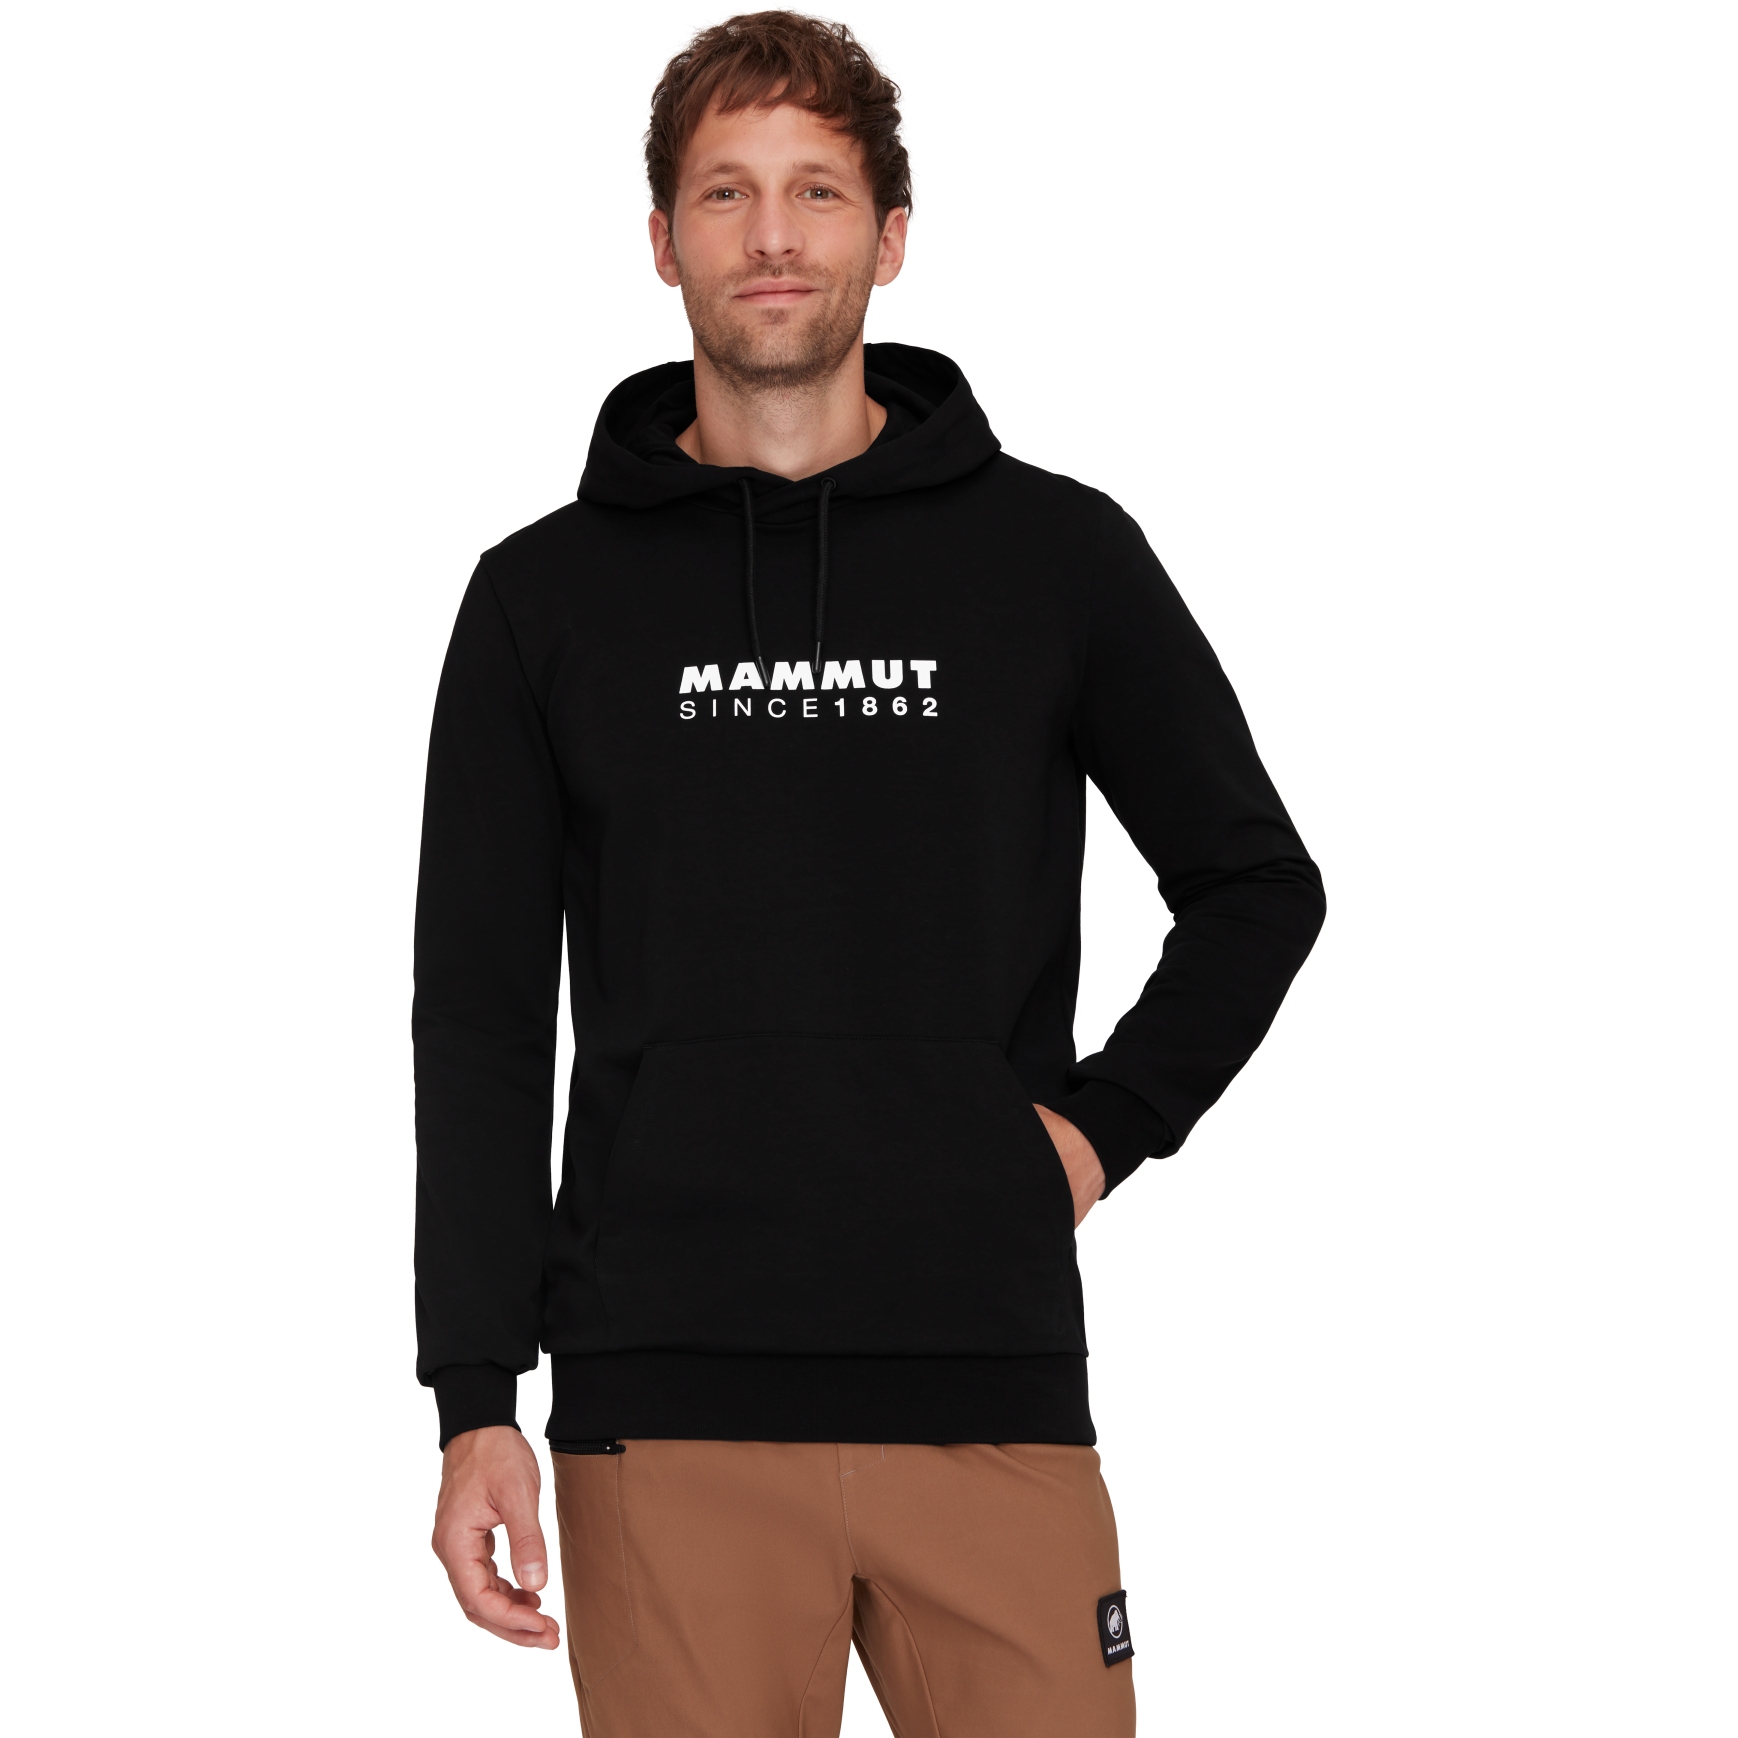 Produktbild von Mammut Logo Kapuzenpullover Herren - schwarz-weiß